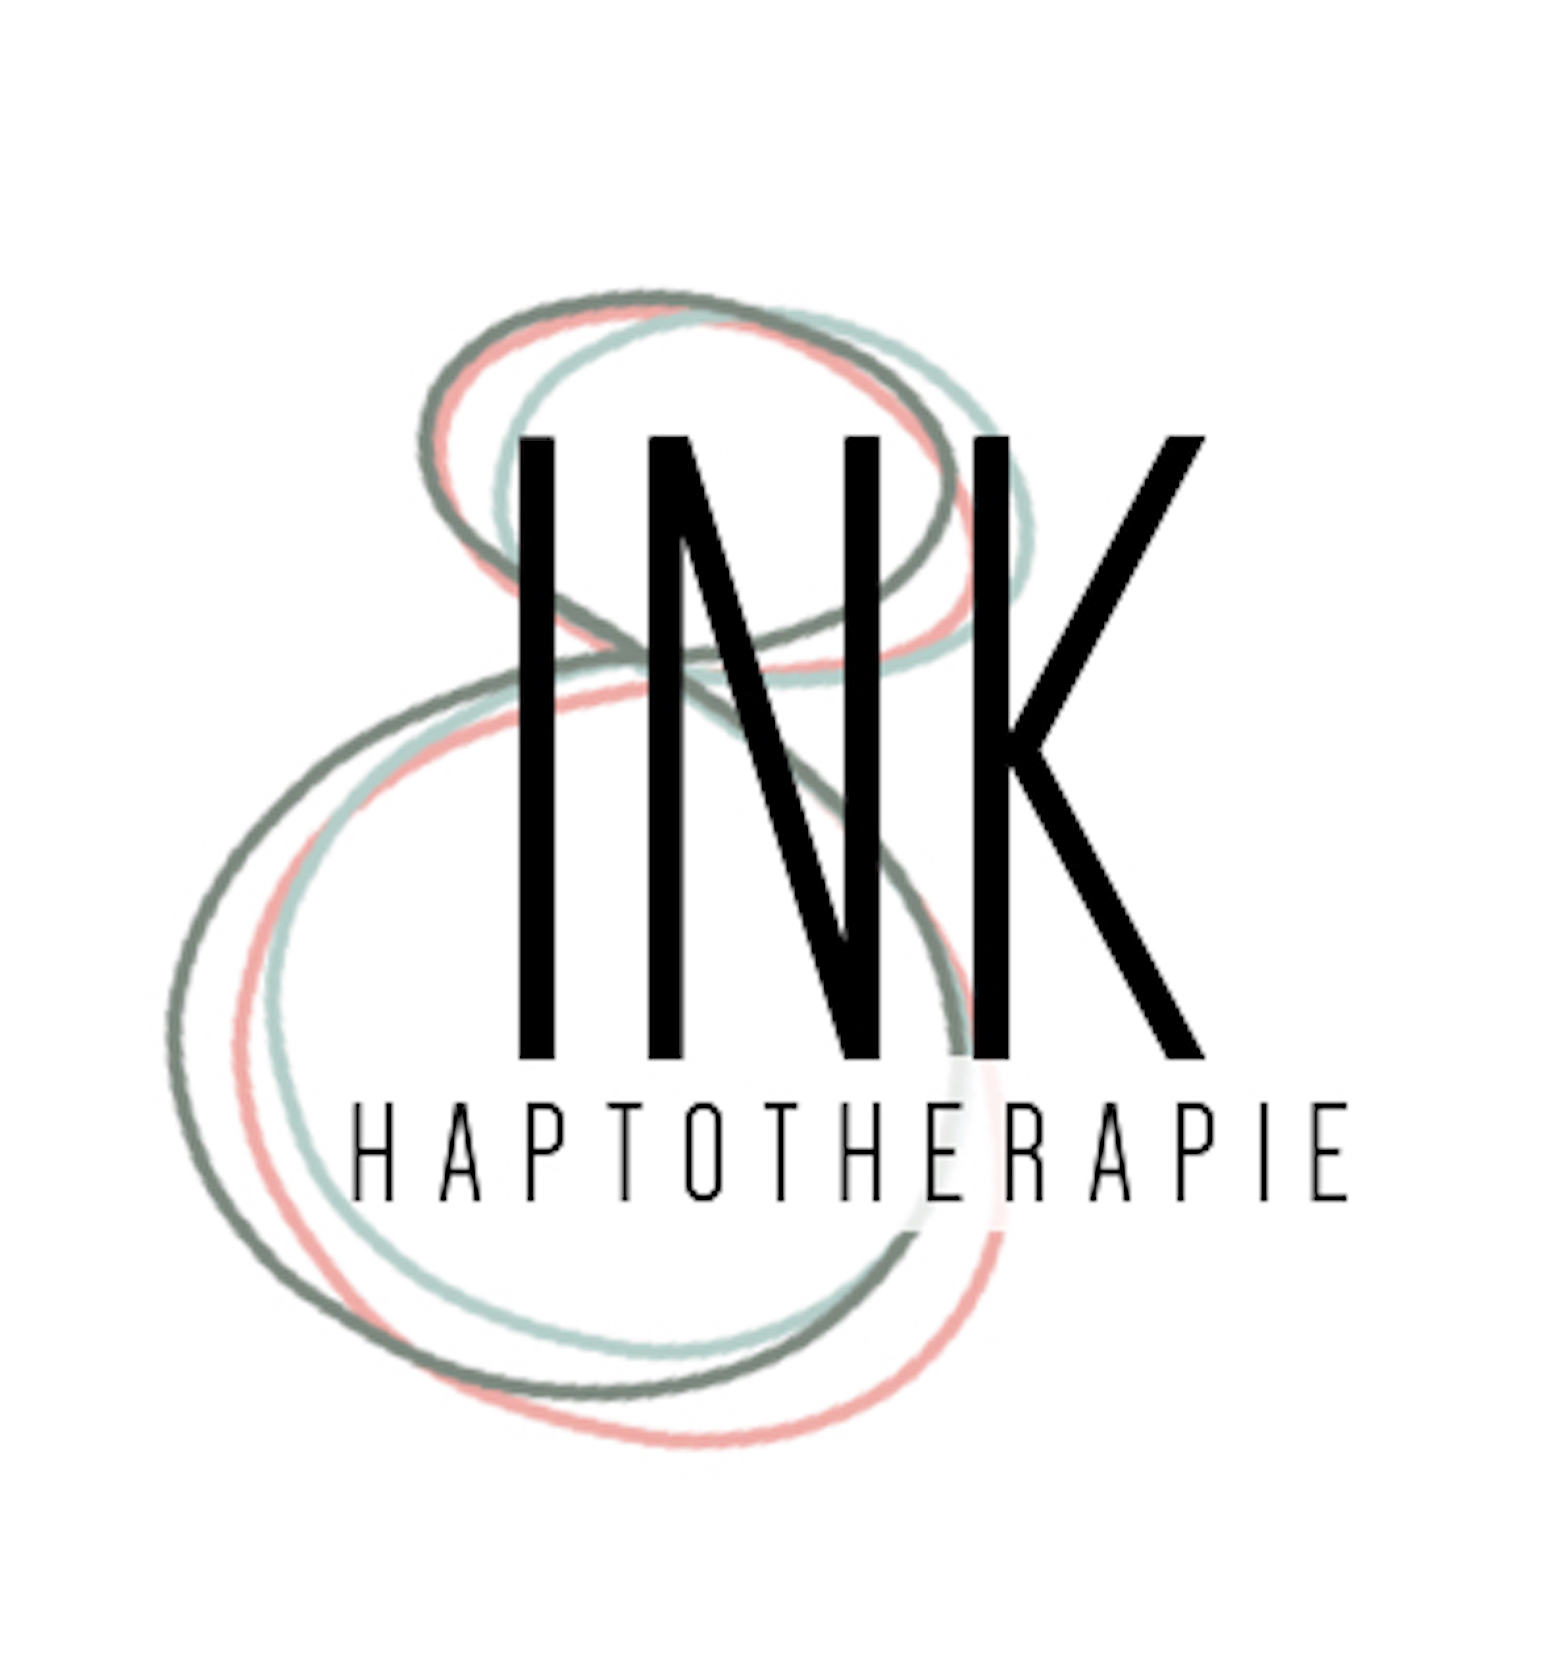 INK haptotherapie